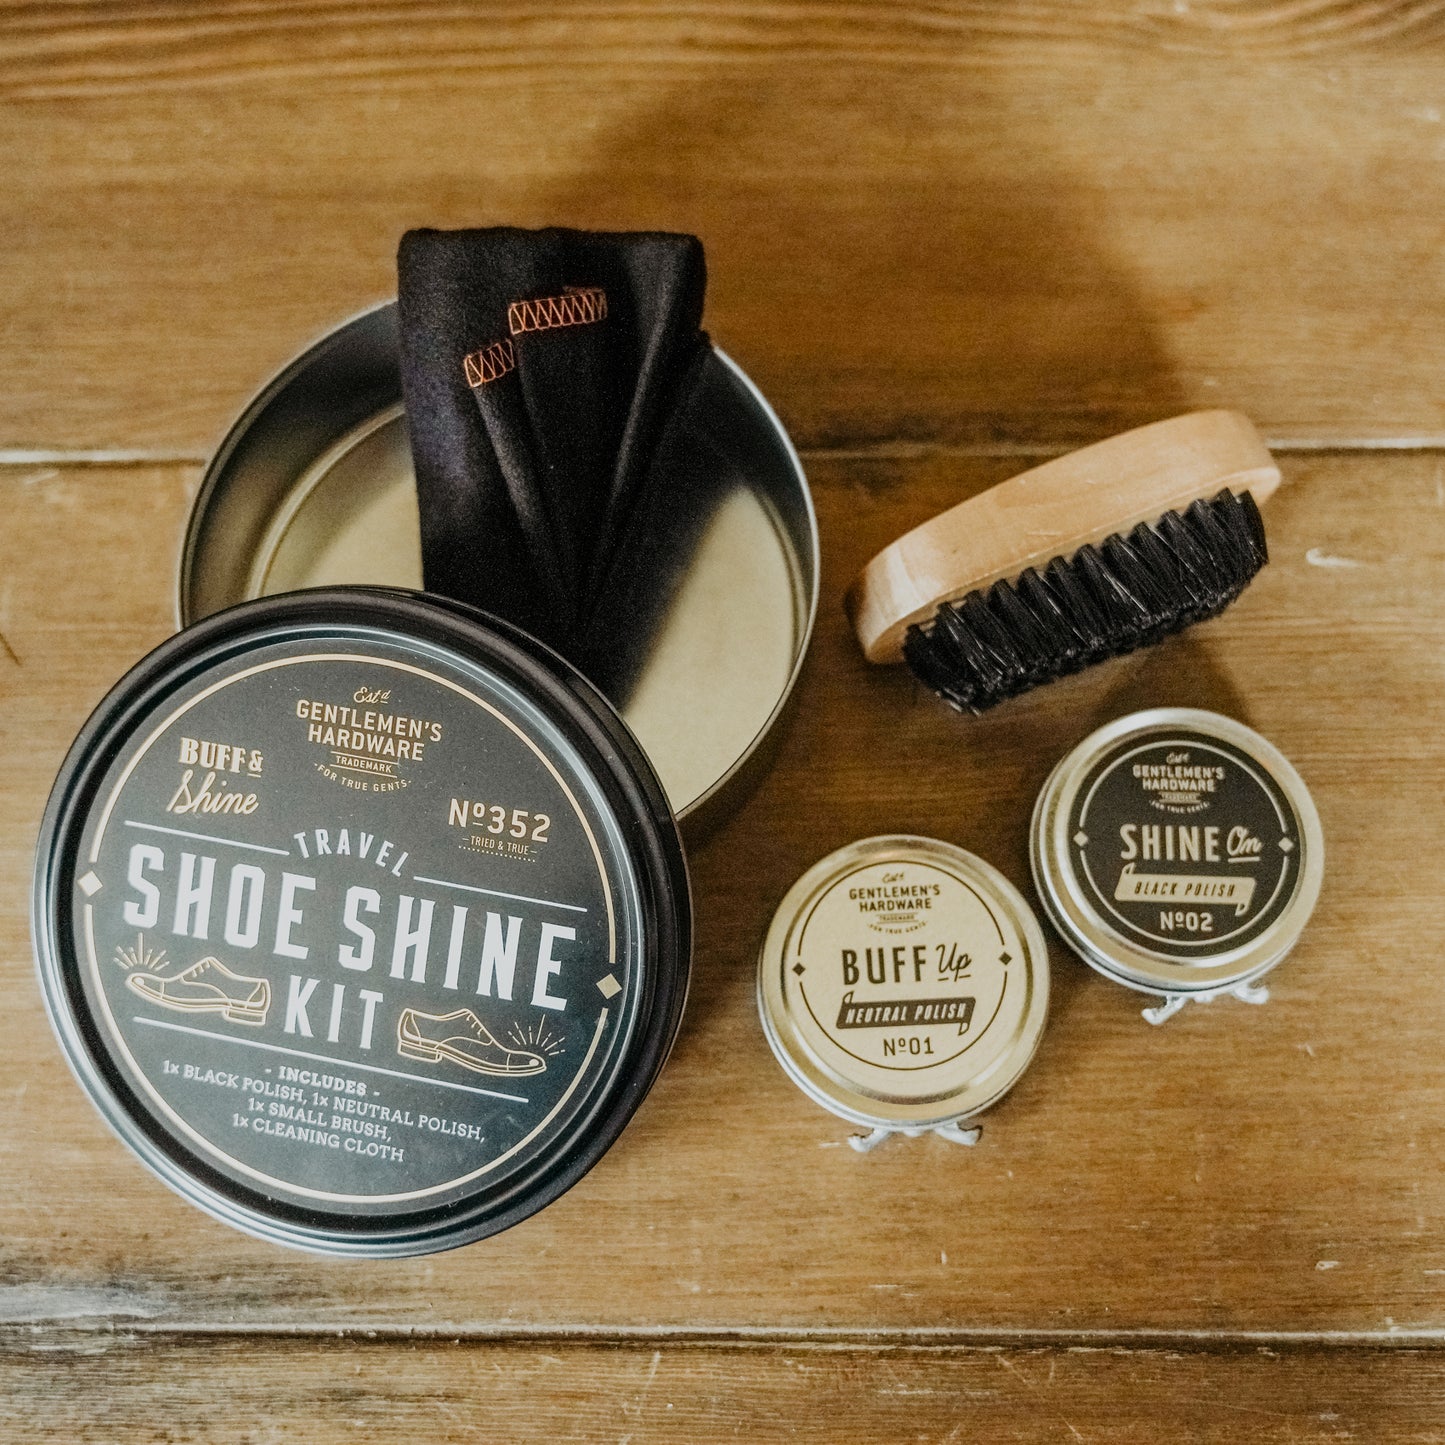 Travel Shoe Shine Tin